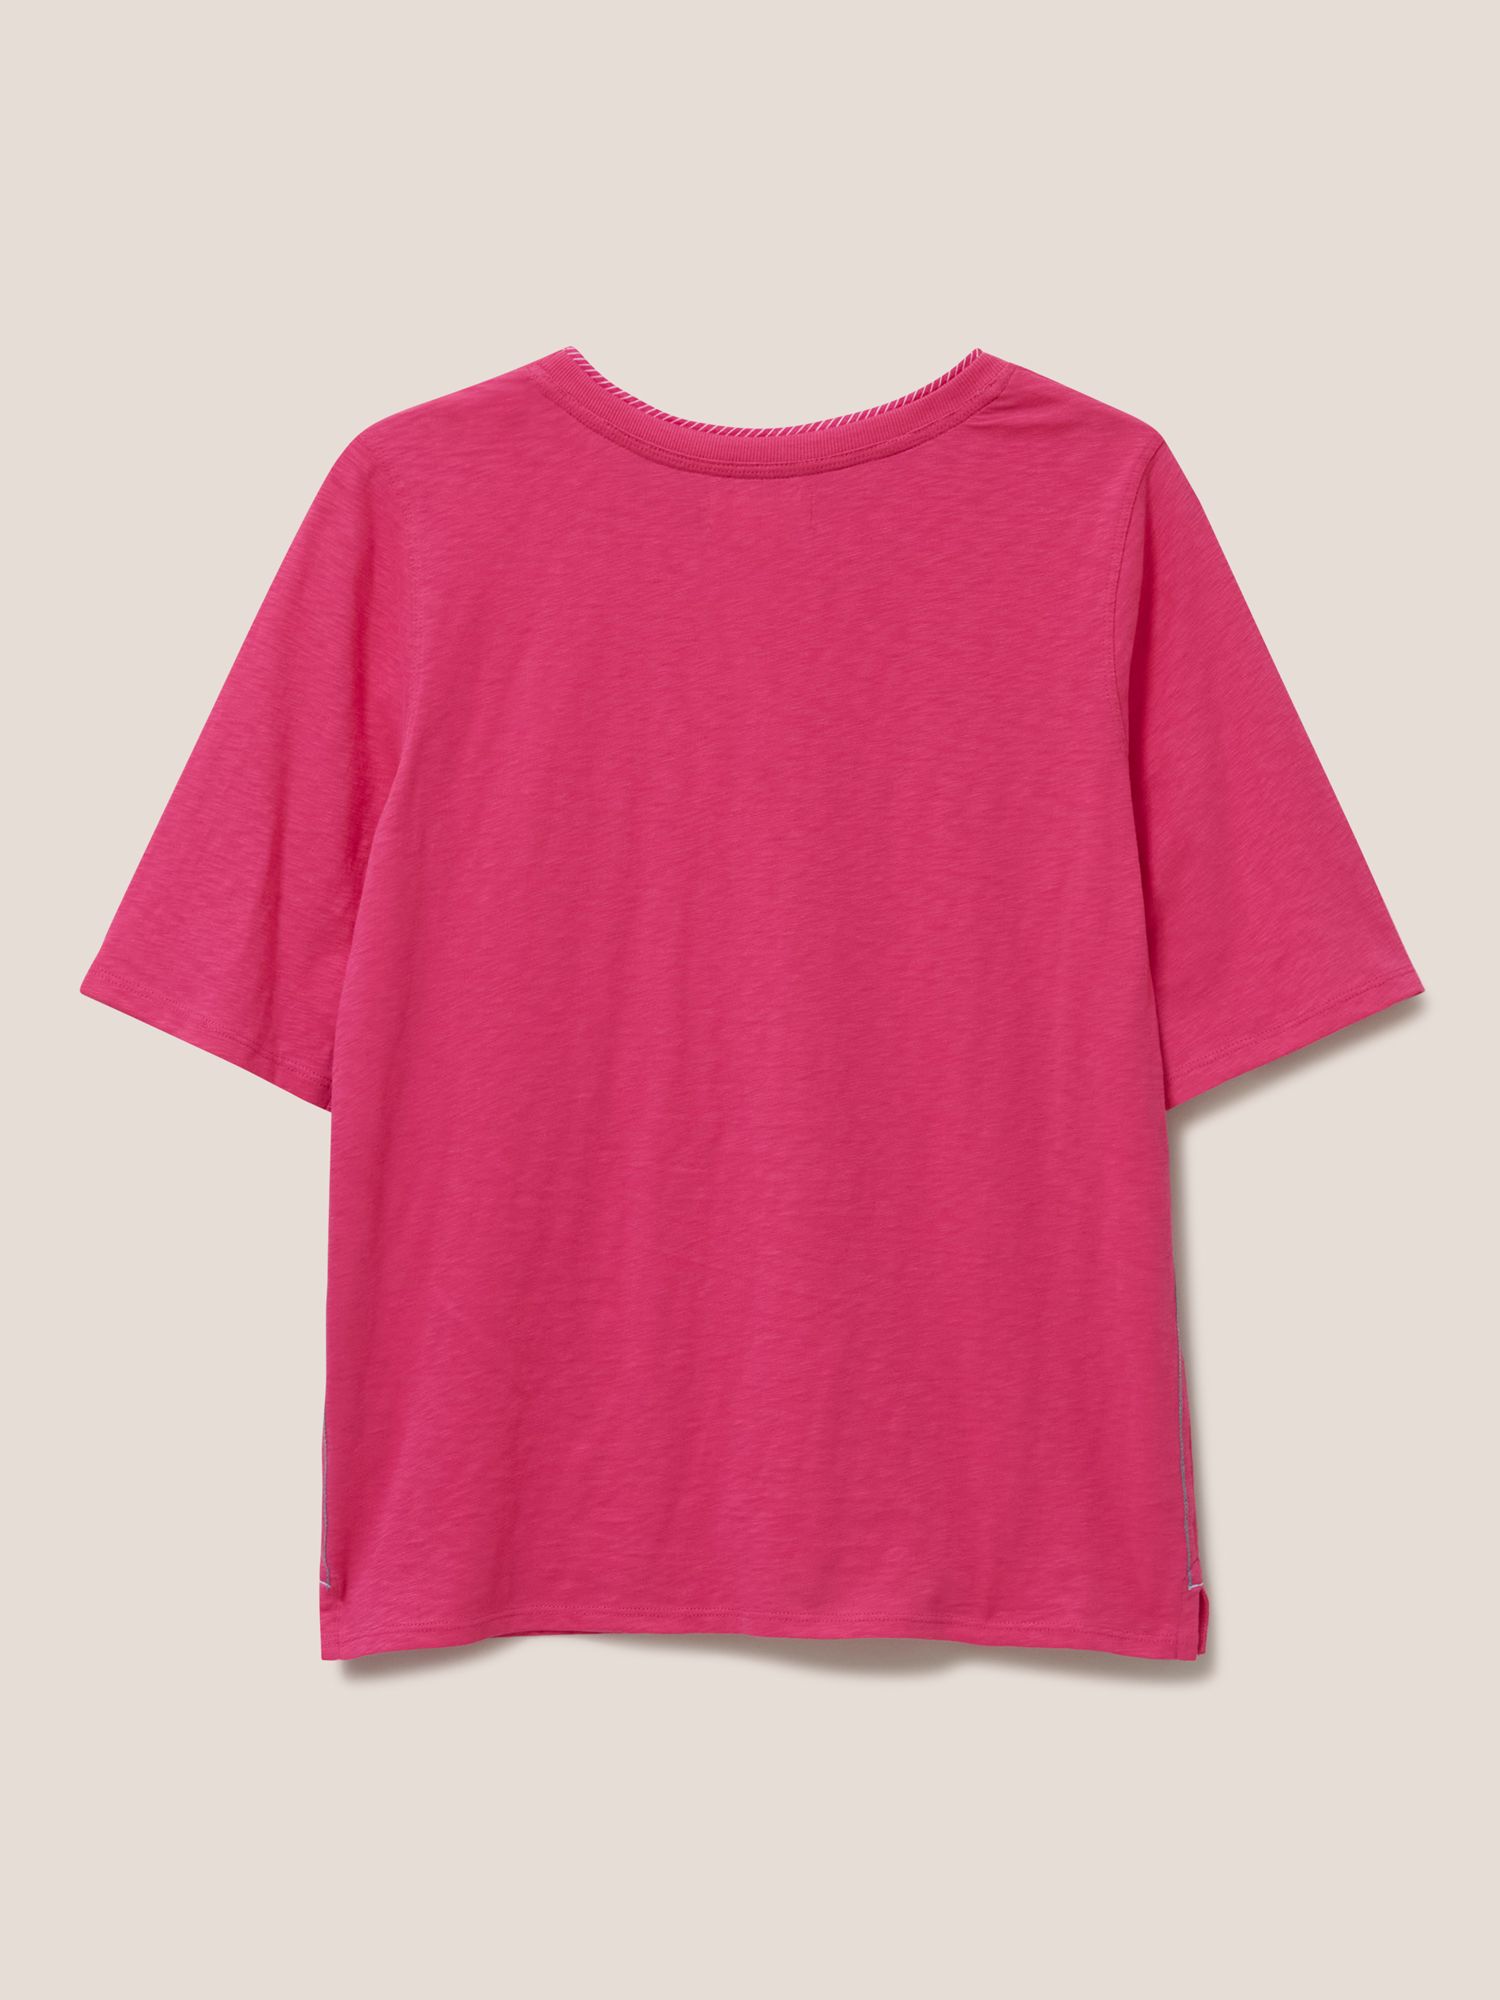 White Stuff Annabel T-Shirt, Pink at John Lewis & Partners